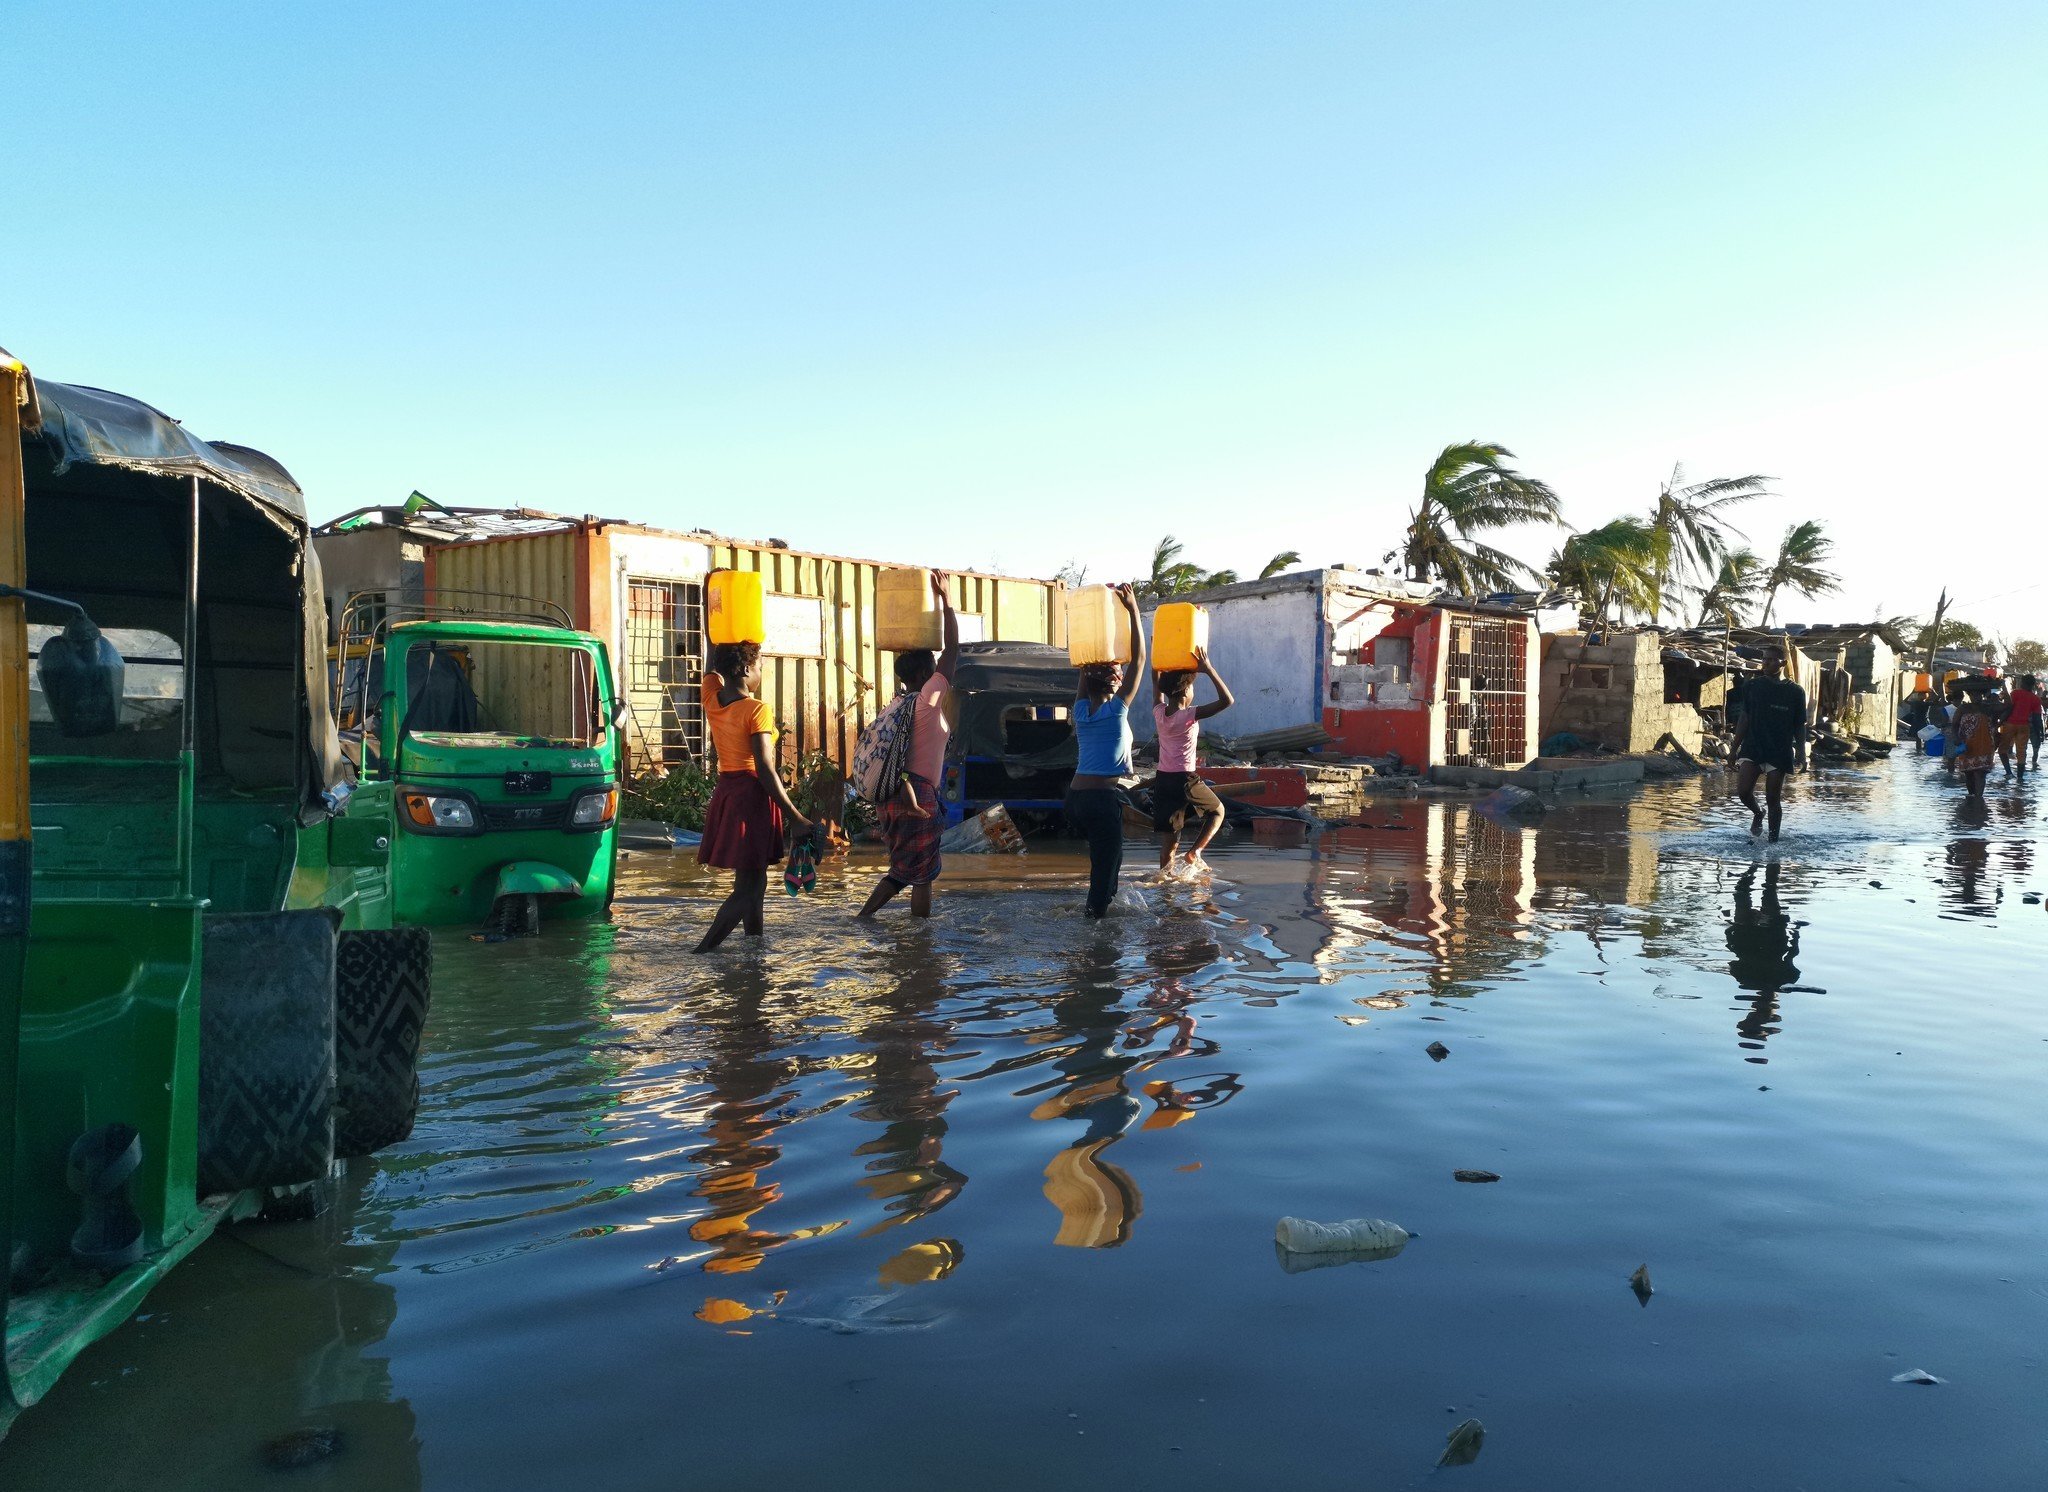 即使能够幸运保住性命，但灾民仍要面对传染病爆发的威胁。在莫桑比克的港口城市贝拉，连日的狂风暴雨令当地多区缺水断电。河道及水源被洪水污染，令灾民感染霍乱和疟疾等水传播疾病的风险增加。（摄影：Sergio Zimba / 乐施会）